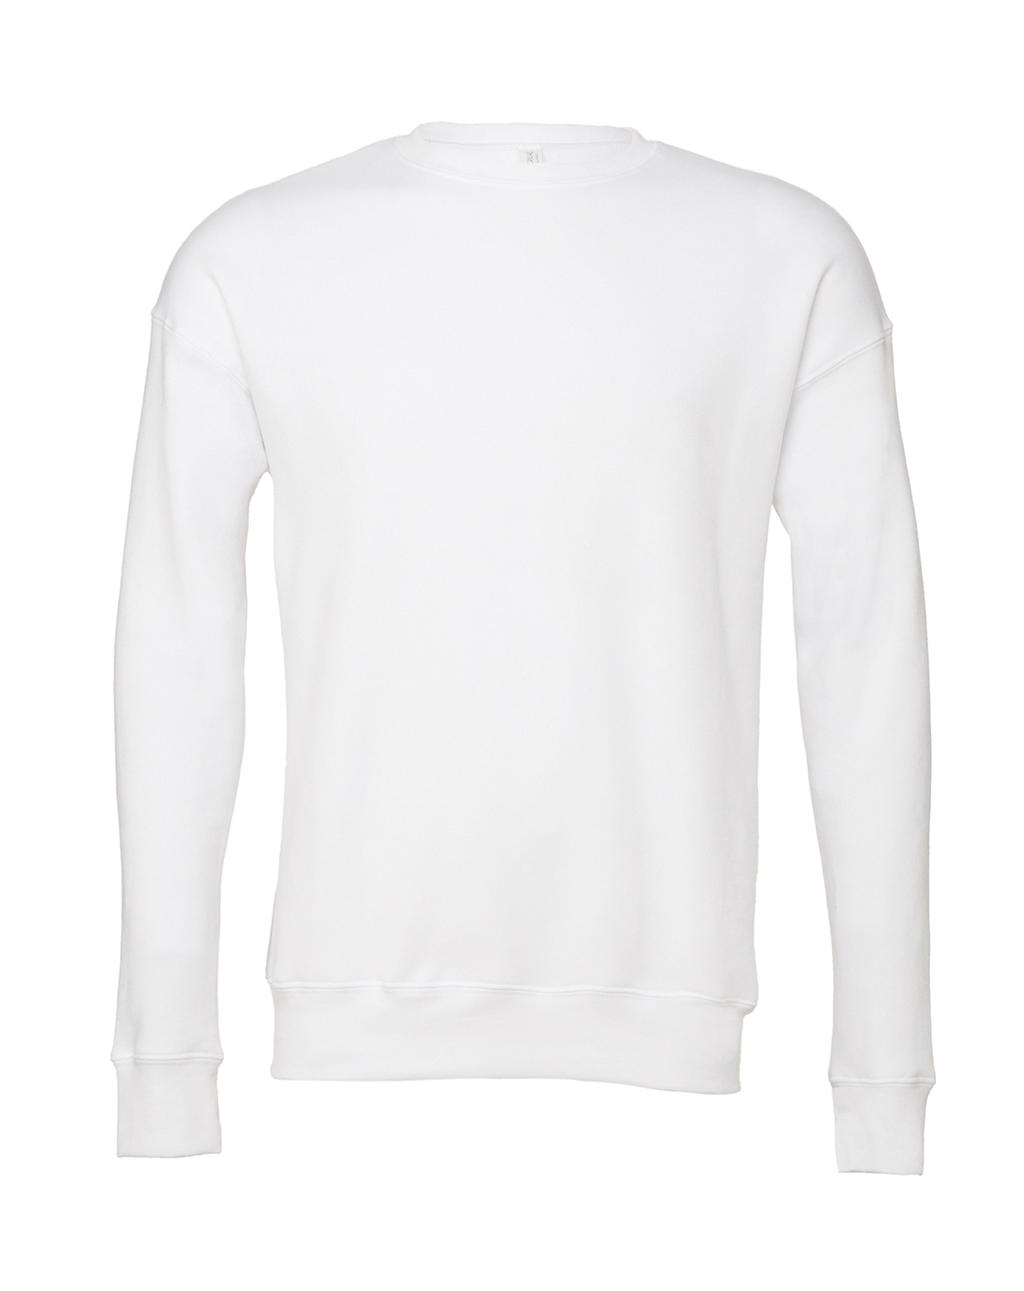  Unisex Drop Shoulder Fleece in Farbe White